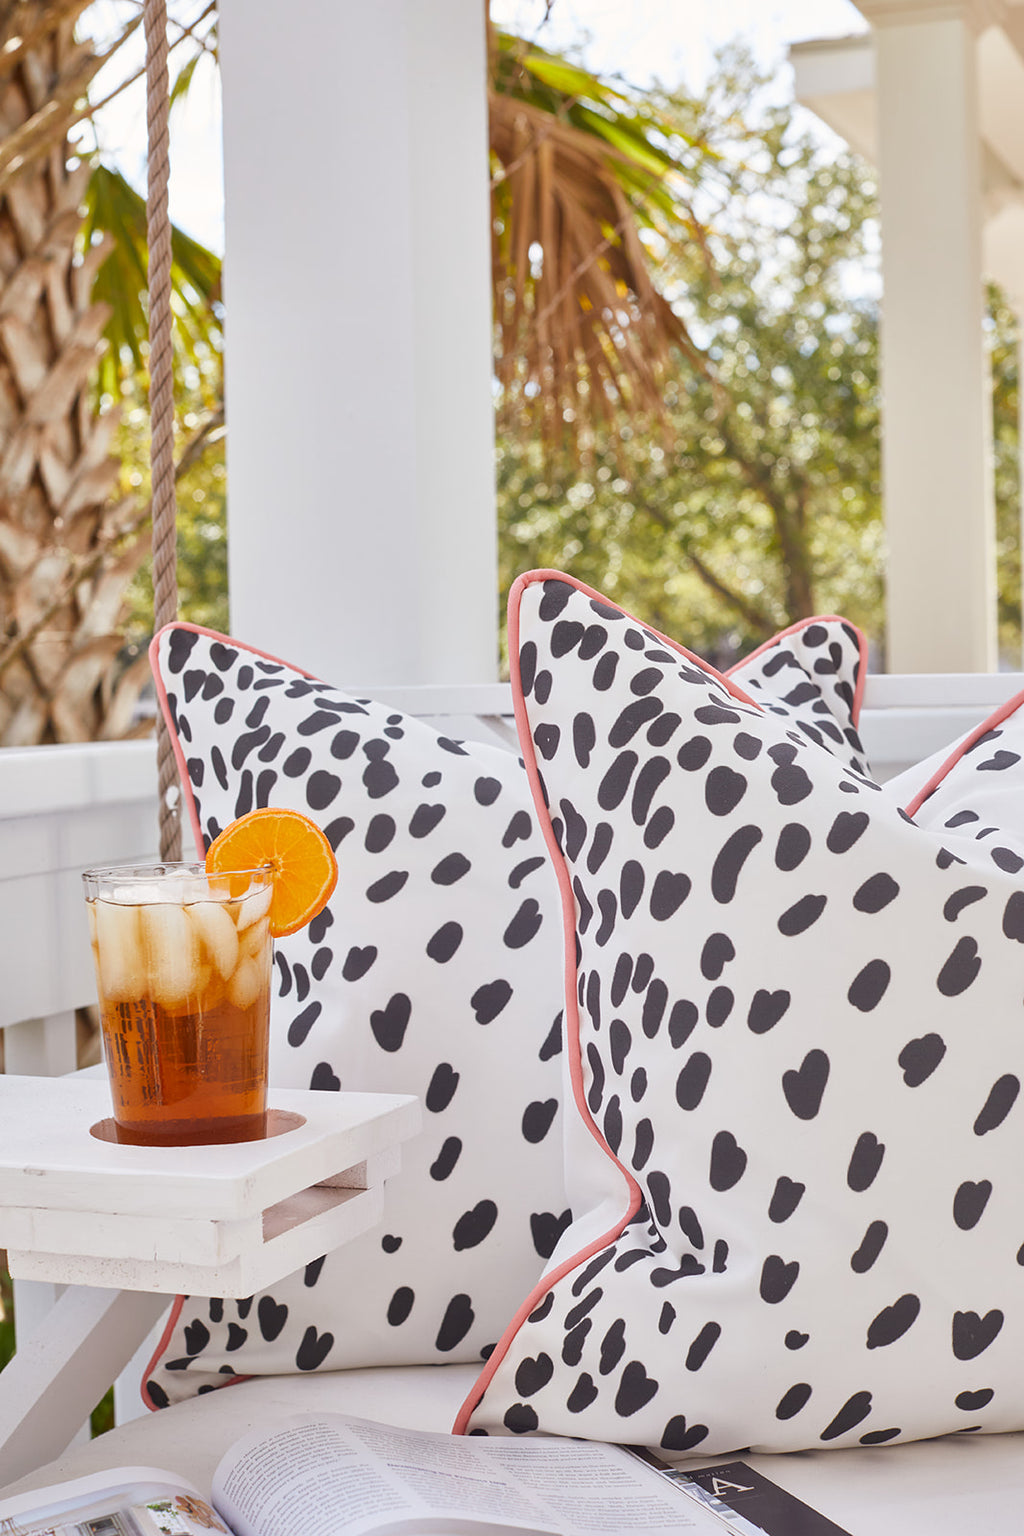 Giraffes on Grass Lumbar Pillow – Sewing Down South